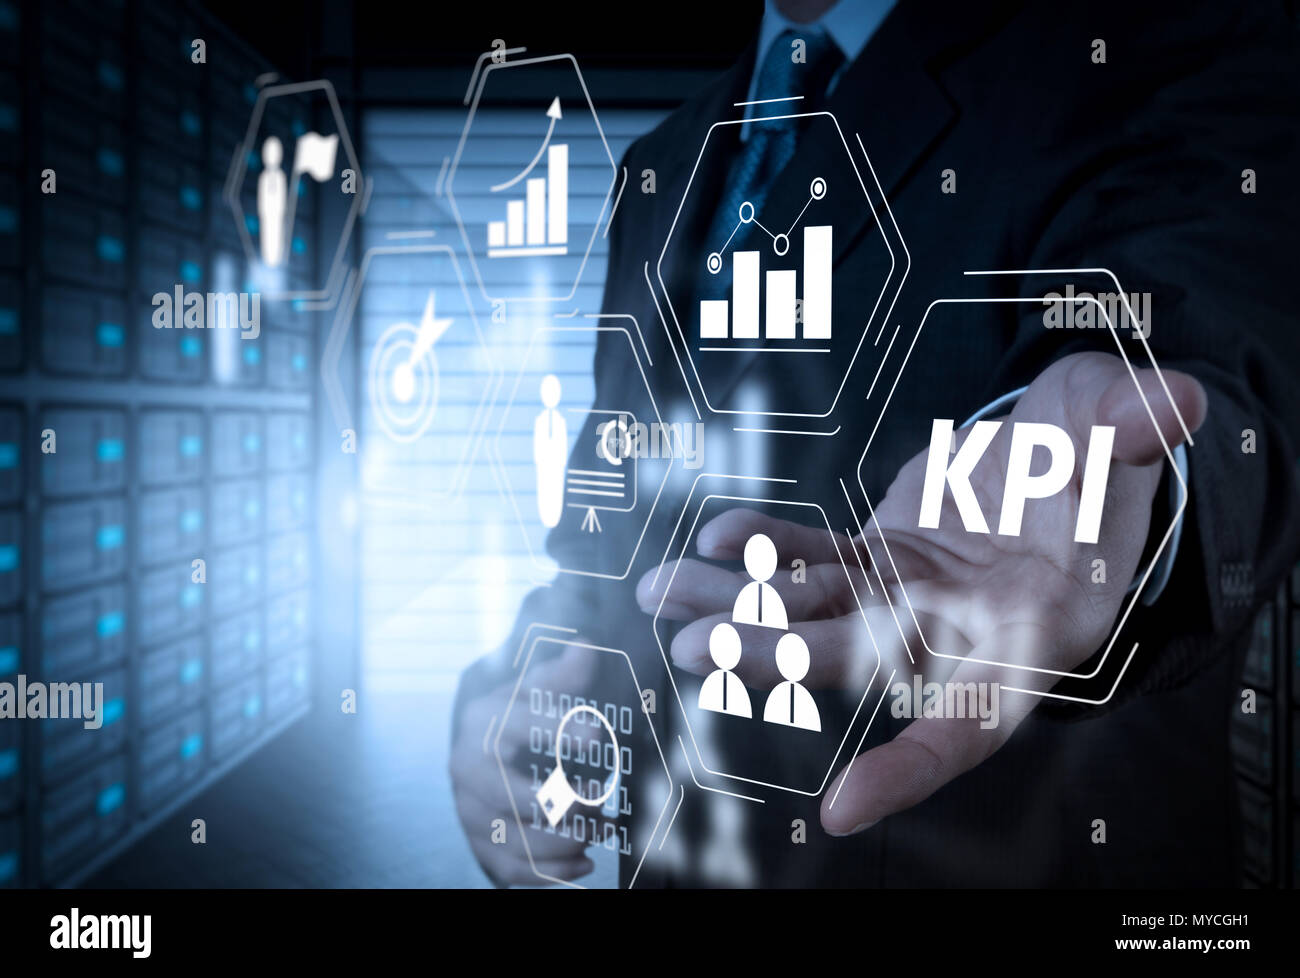 Indicateur de performance clé (KPI) workinng avec Business Intelligence (BI) indicateurs pour mesurer le rendement et l'objectif prévu. Banque D'Images